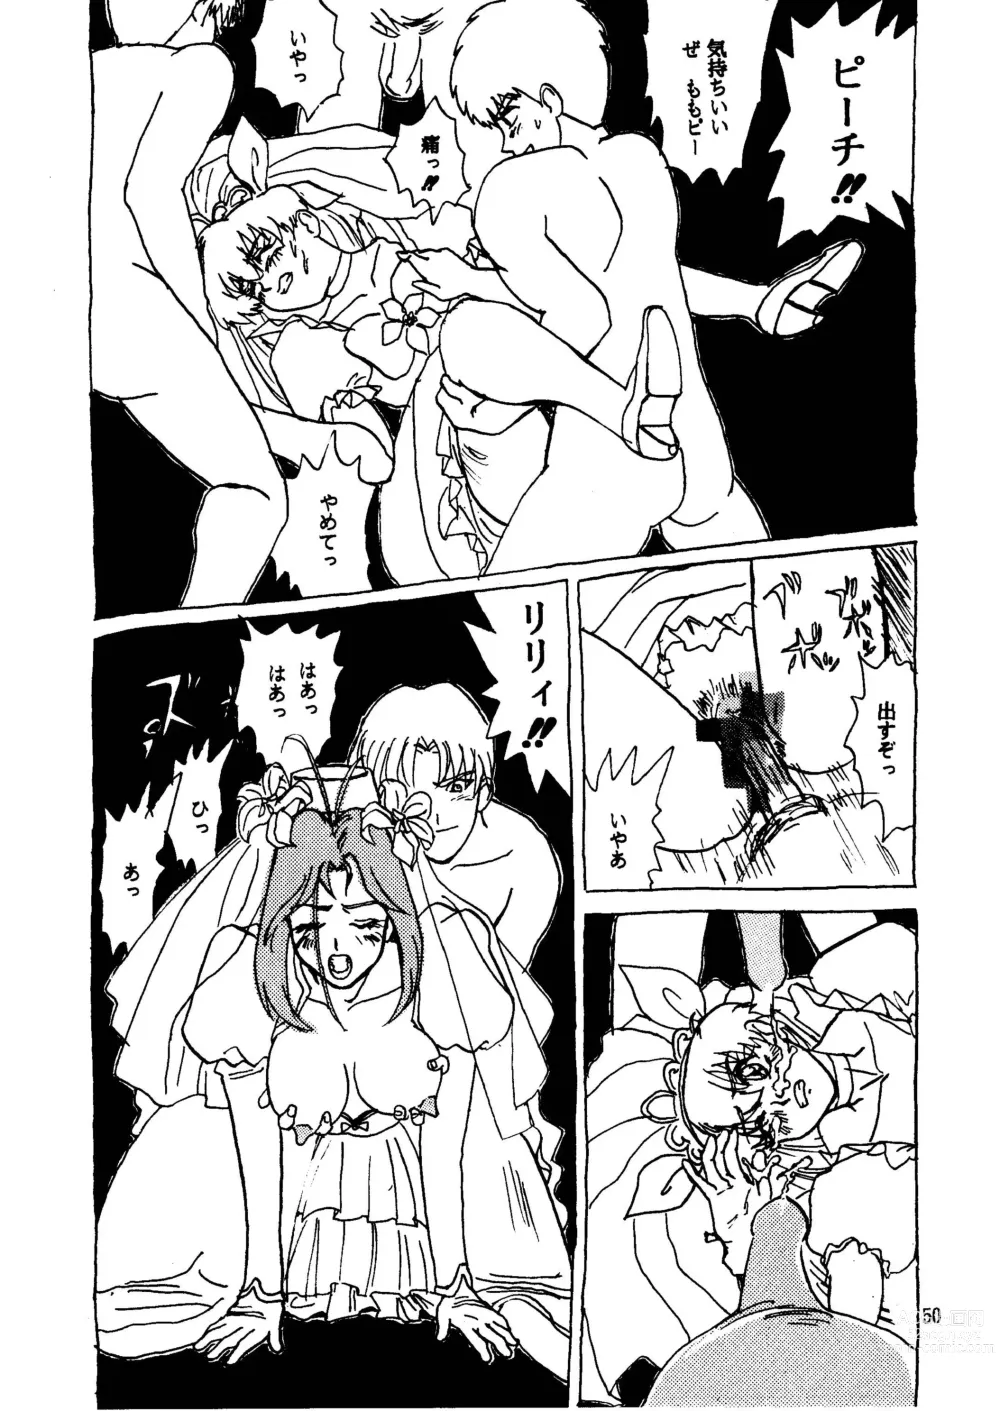 Page 50 of doujinshi GALTECH